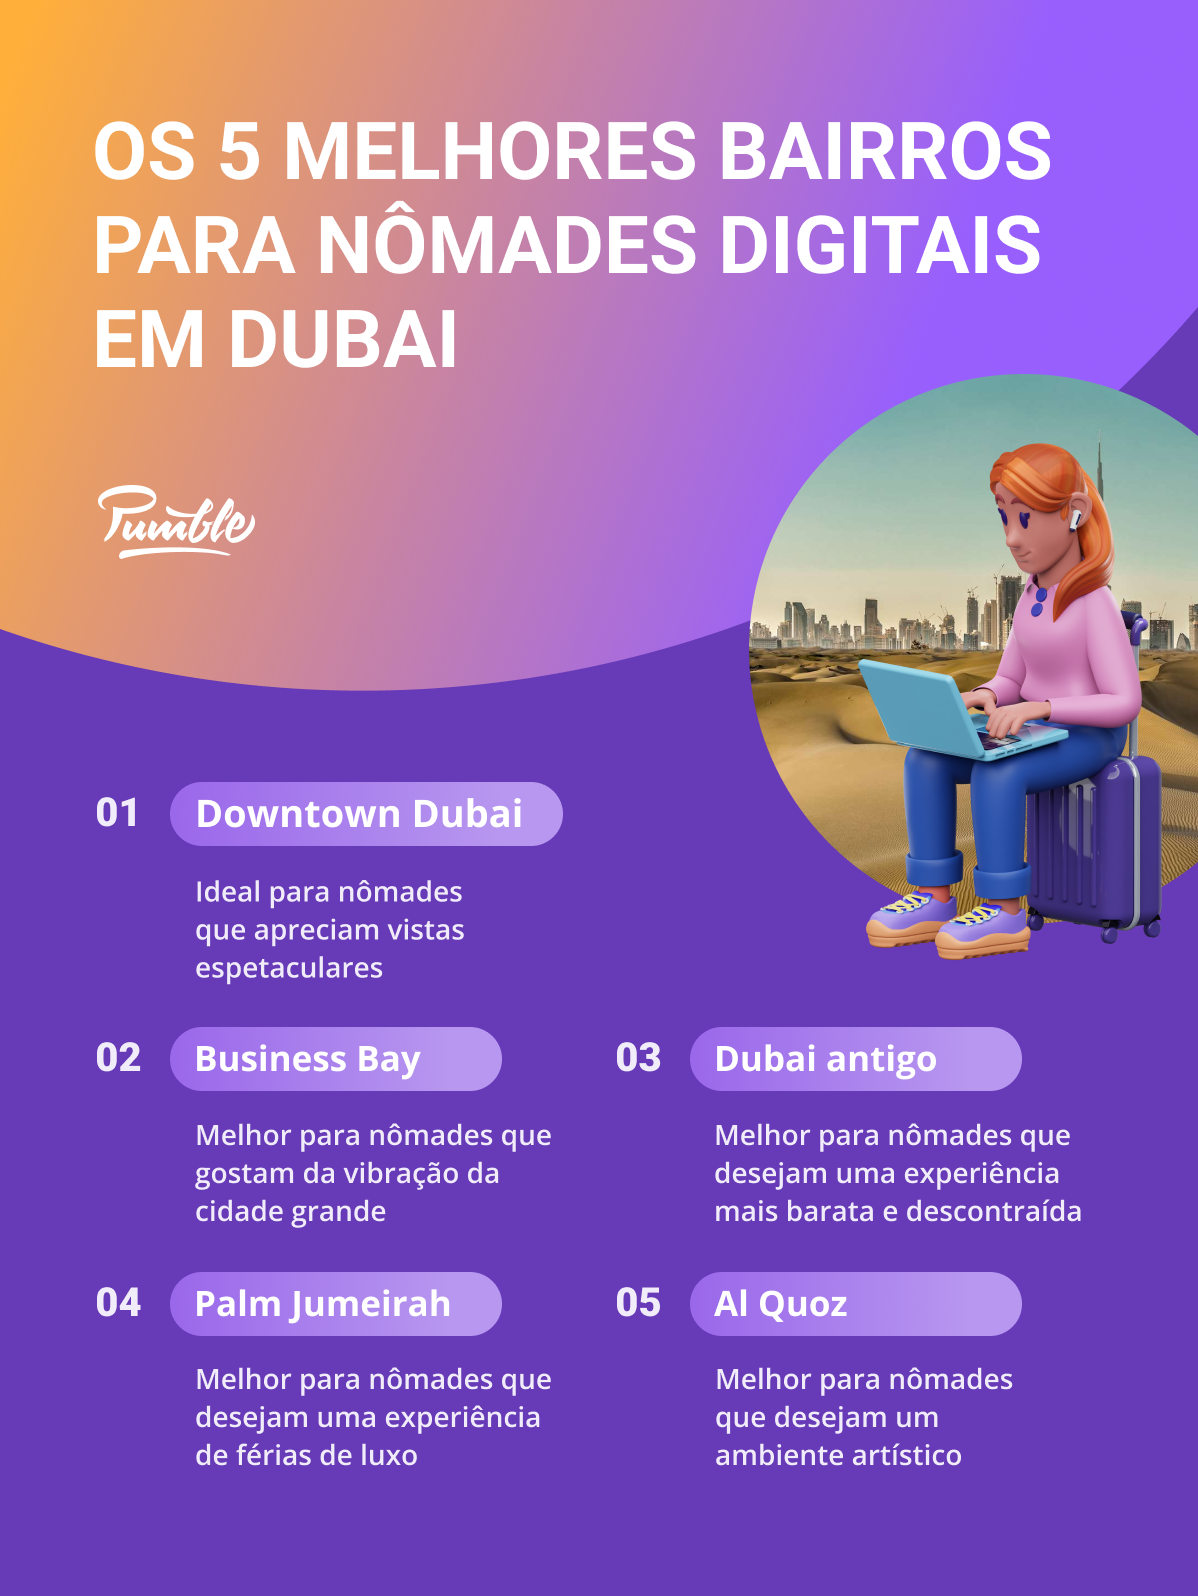 Os 5 melhores bairros para nômades digitais em Dubai